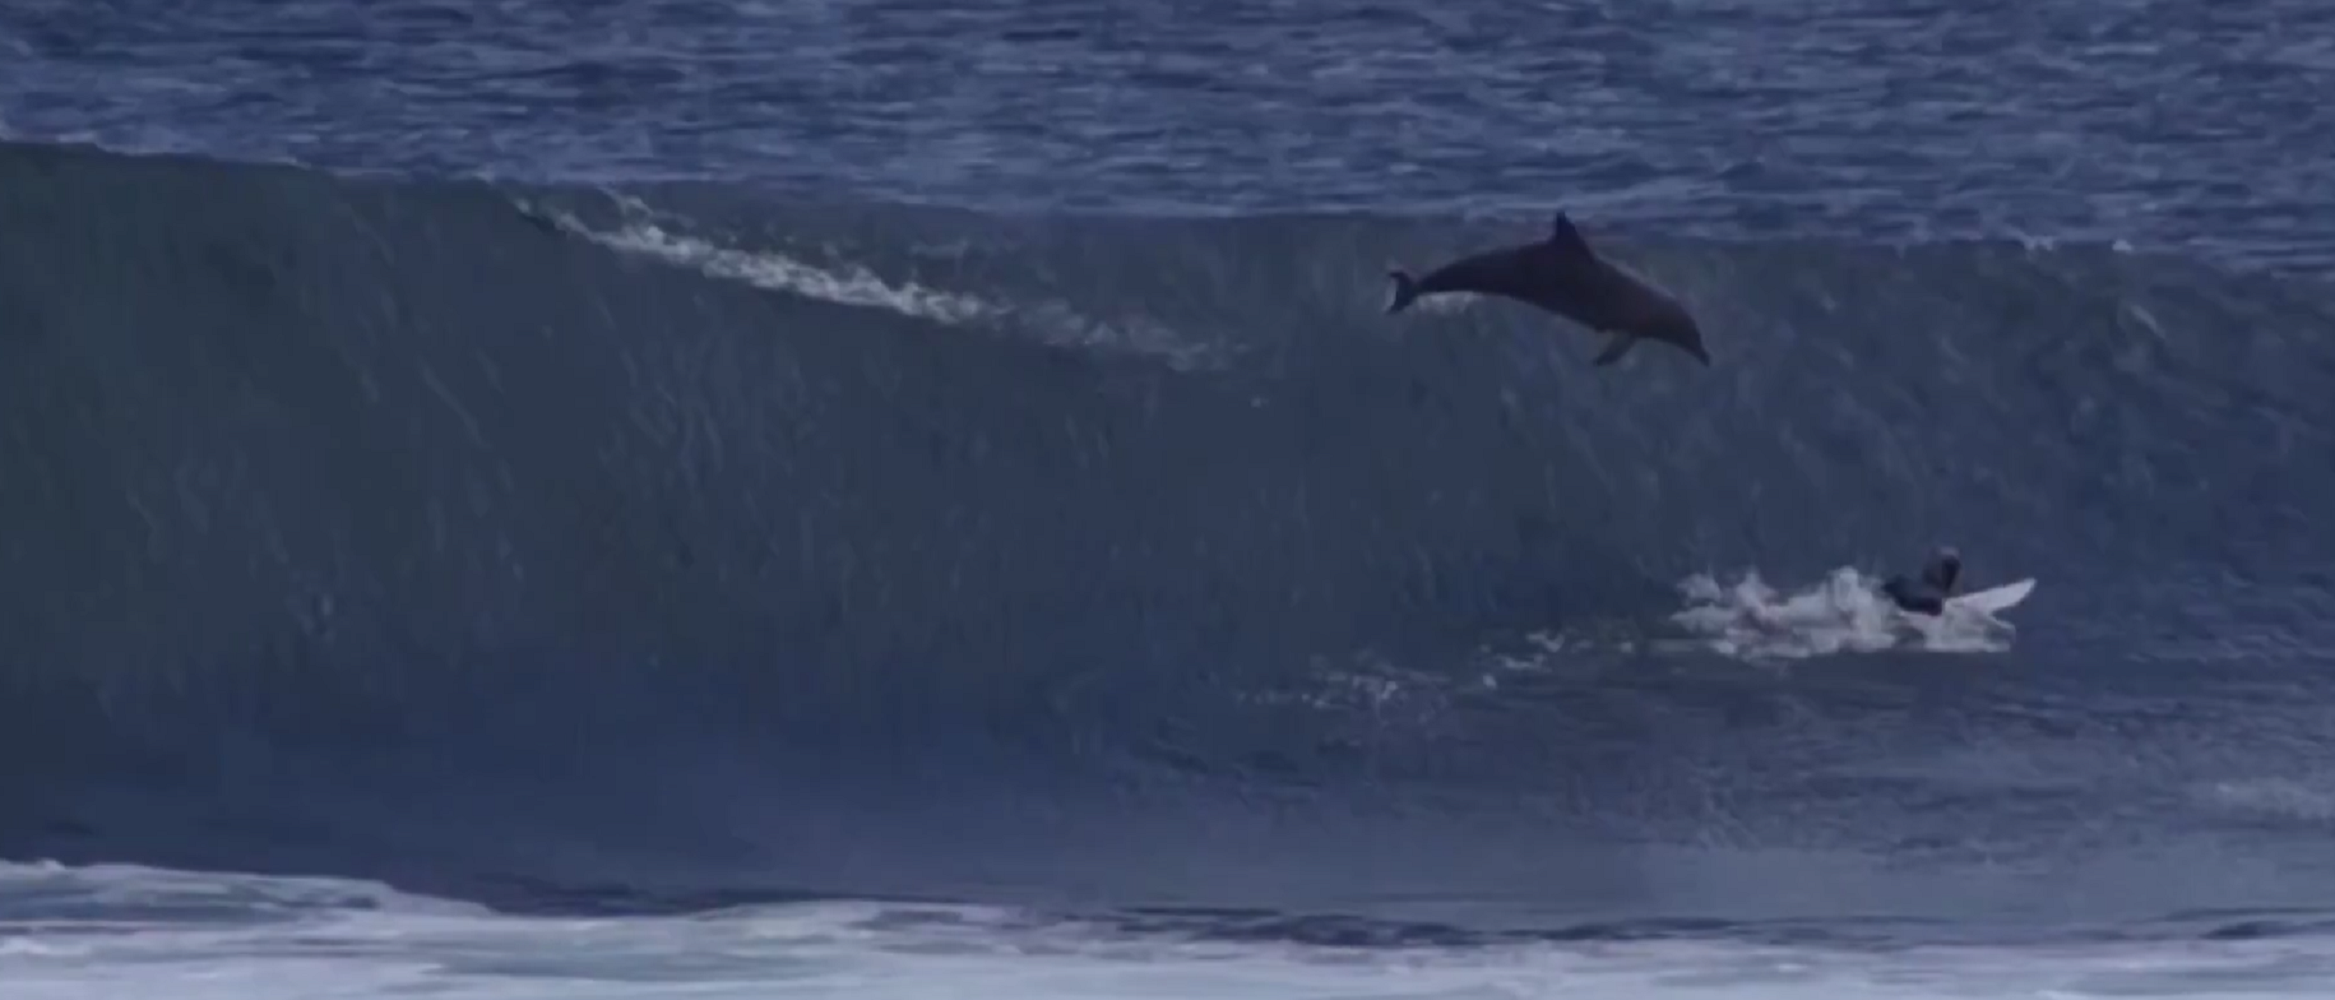 Un delfín salta y cae encima de un joven campeón de surf